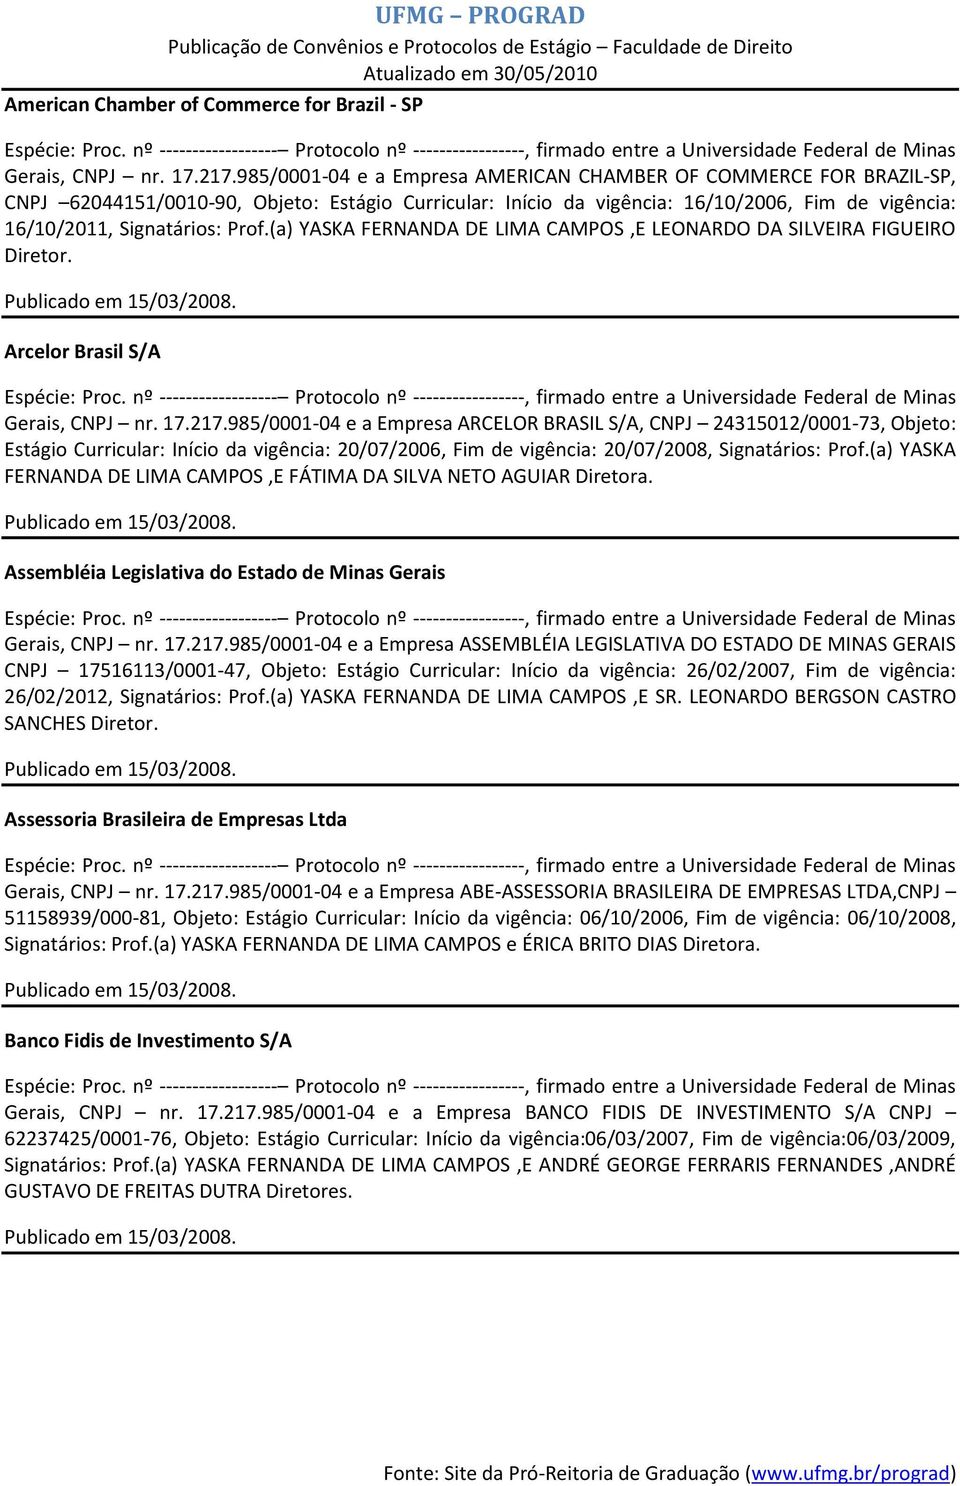 (a) YASKA FERNANDA DE LIMA CAMPOS,E LEONARDO DA SILVEIRA FIGUEIRO Diretor. Arcelor Brasil S/A Gerais, CNPJ nr. 17.217.